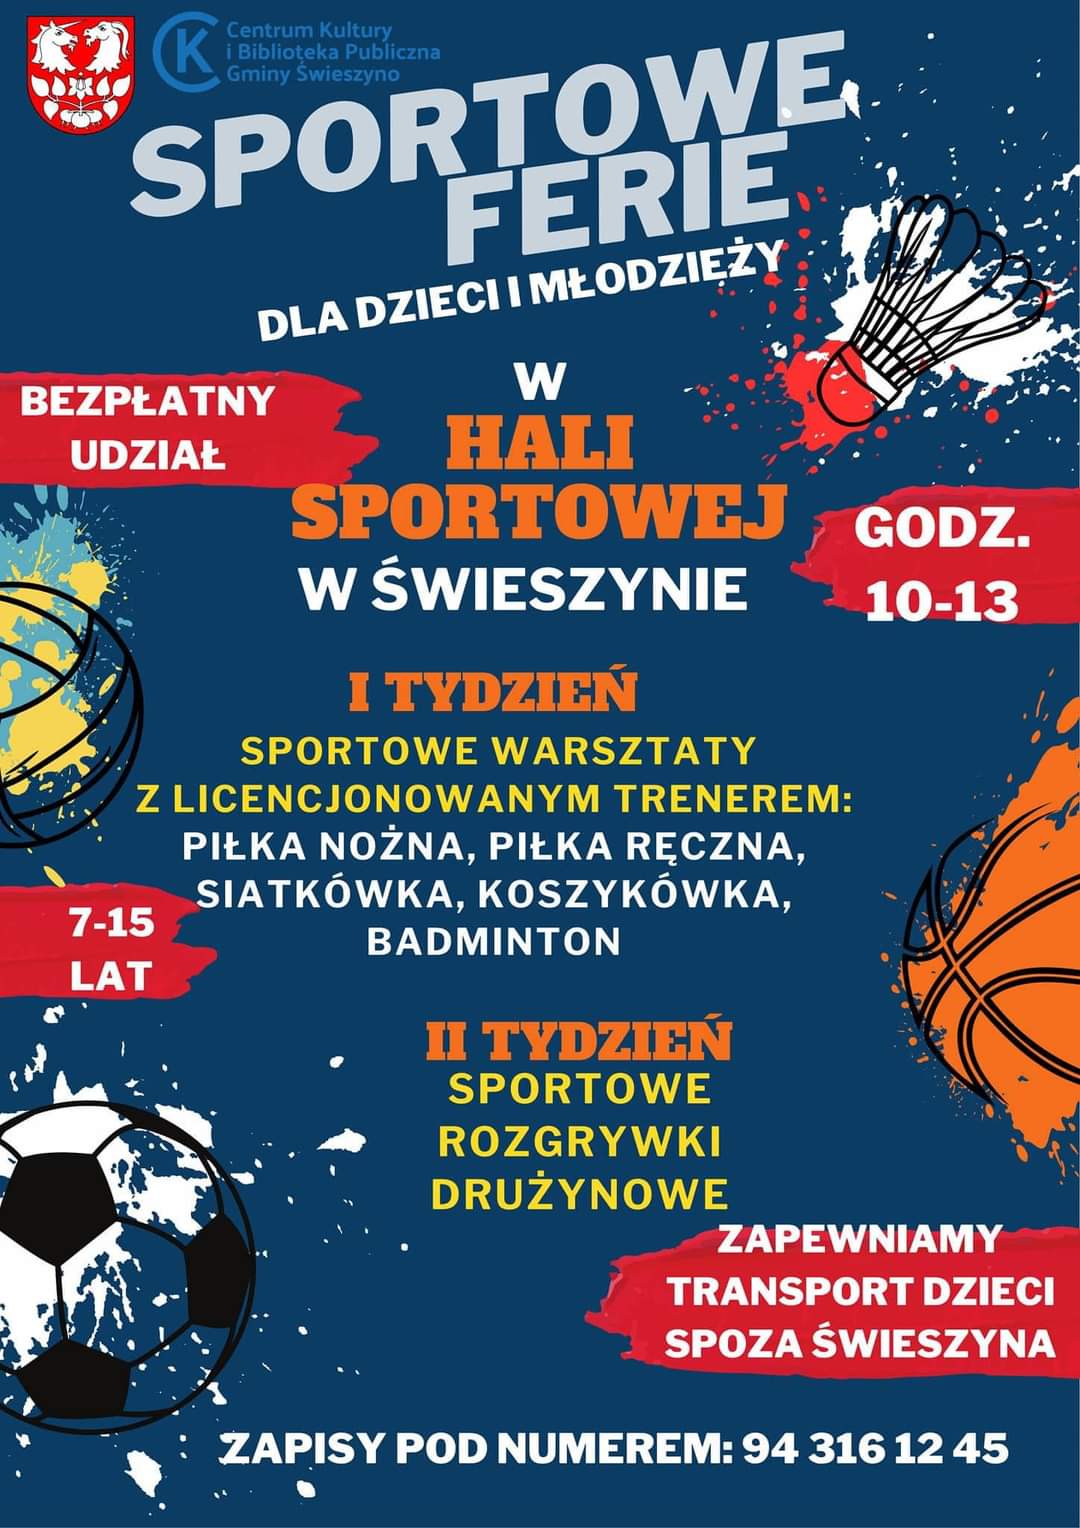 Plakat z zaproszeniem na sportowe ferie dla dzieci i młodzieży w Świeszynie